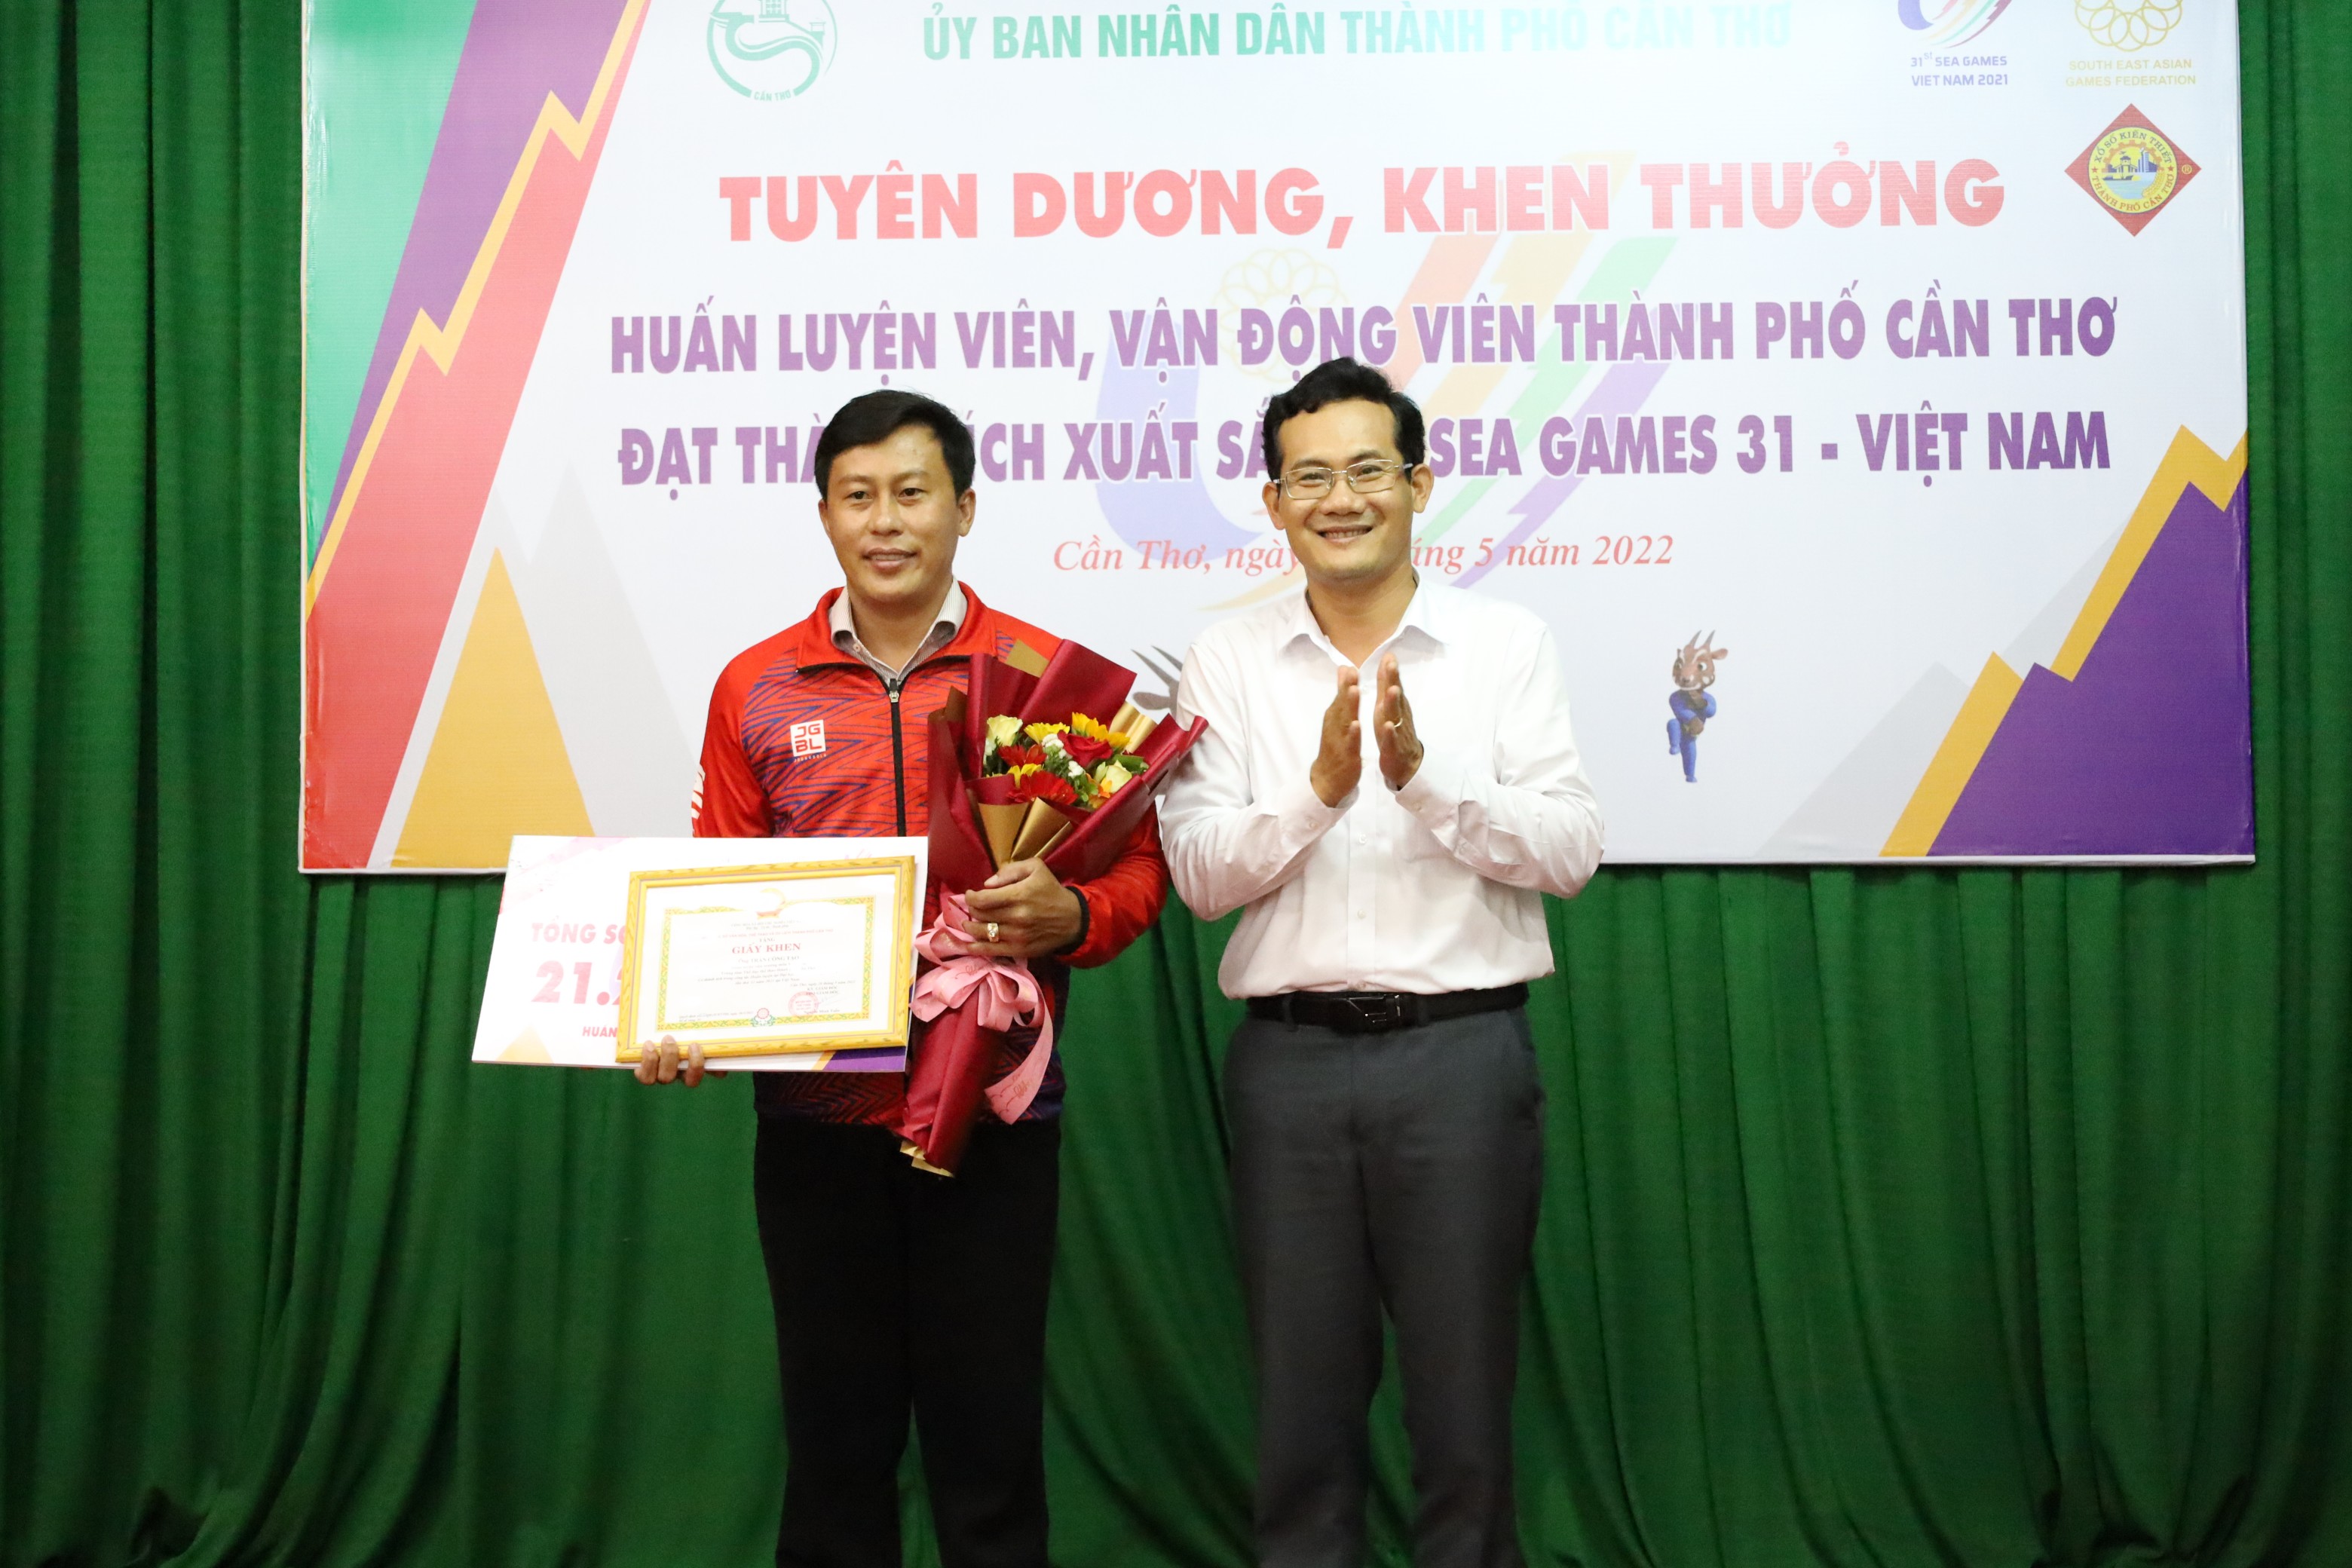 Ông Nguyễn Minh Tuấn - Phó Giám đốc Sở Văn hóa, Thể thao và Du lịch TP. Cần Thơ trao giấy khen và tiền thưởng của Sở Văn hóa cho HLV đạt thành tích xuất sắc nhất.